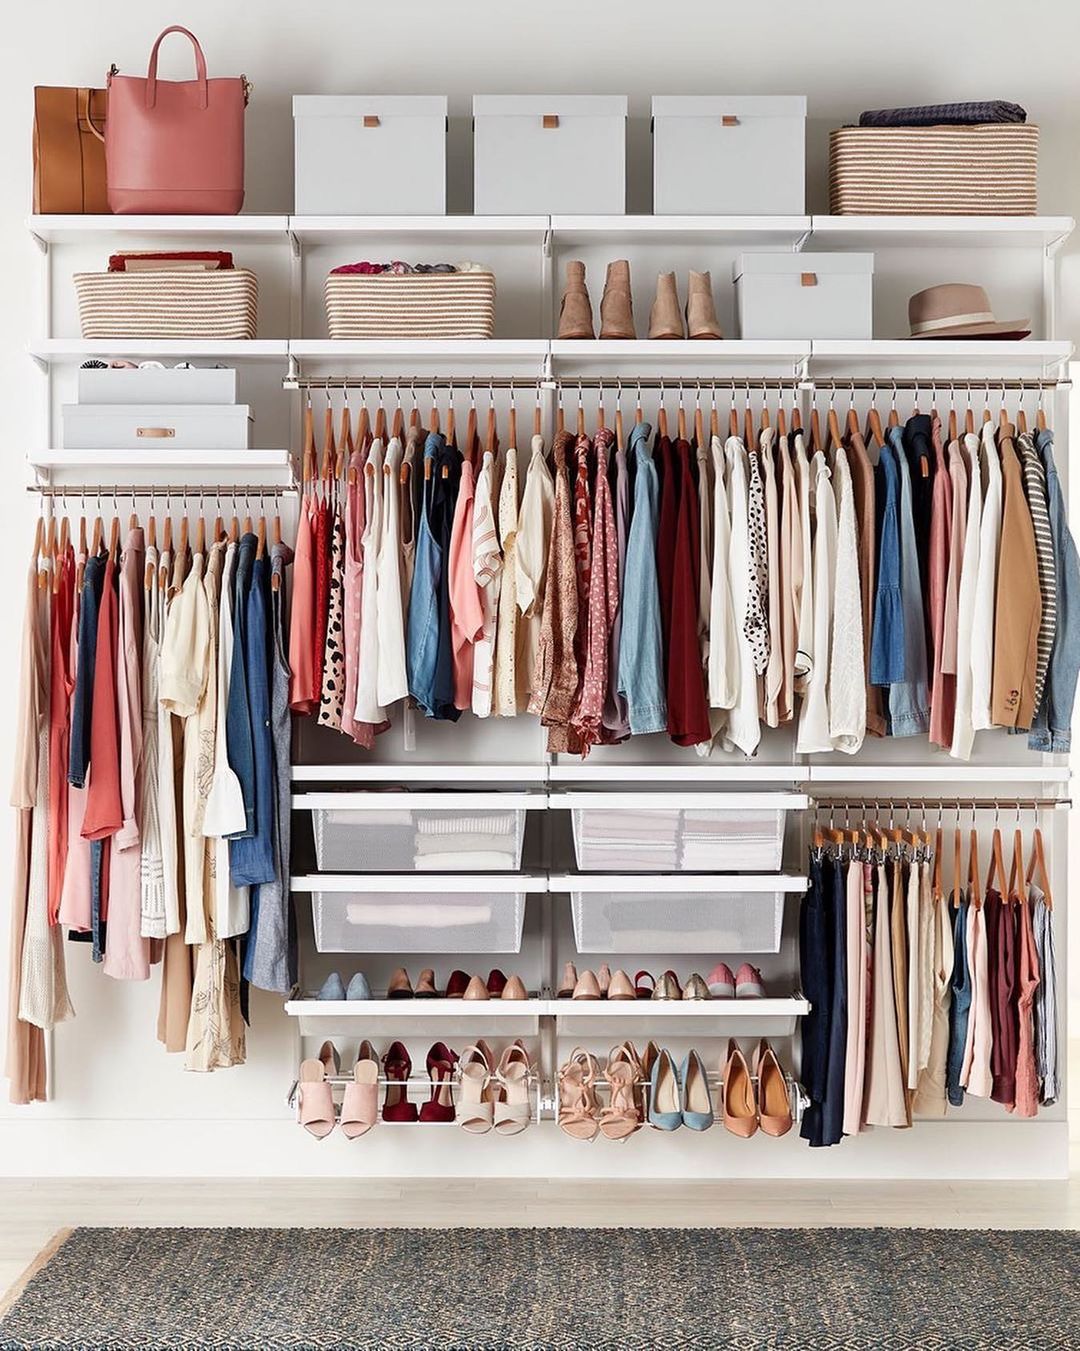 Организация пространства в шкафу с одеждой